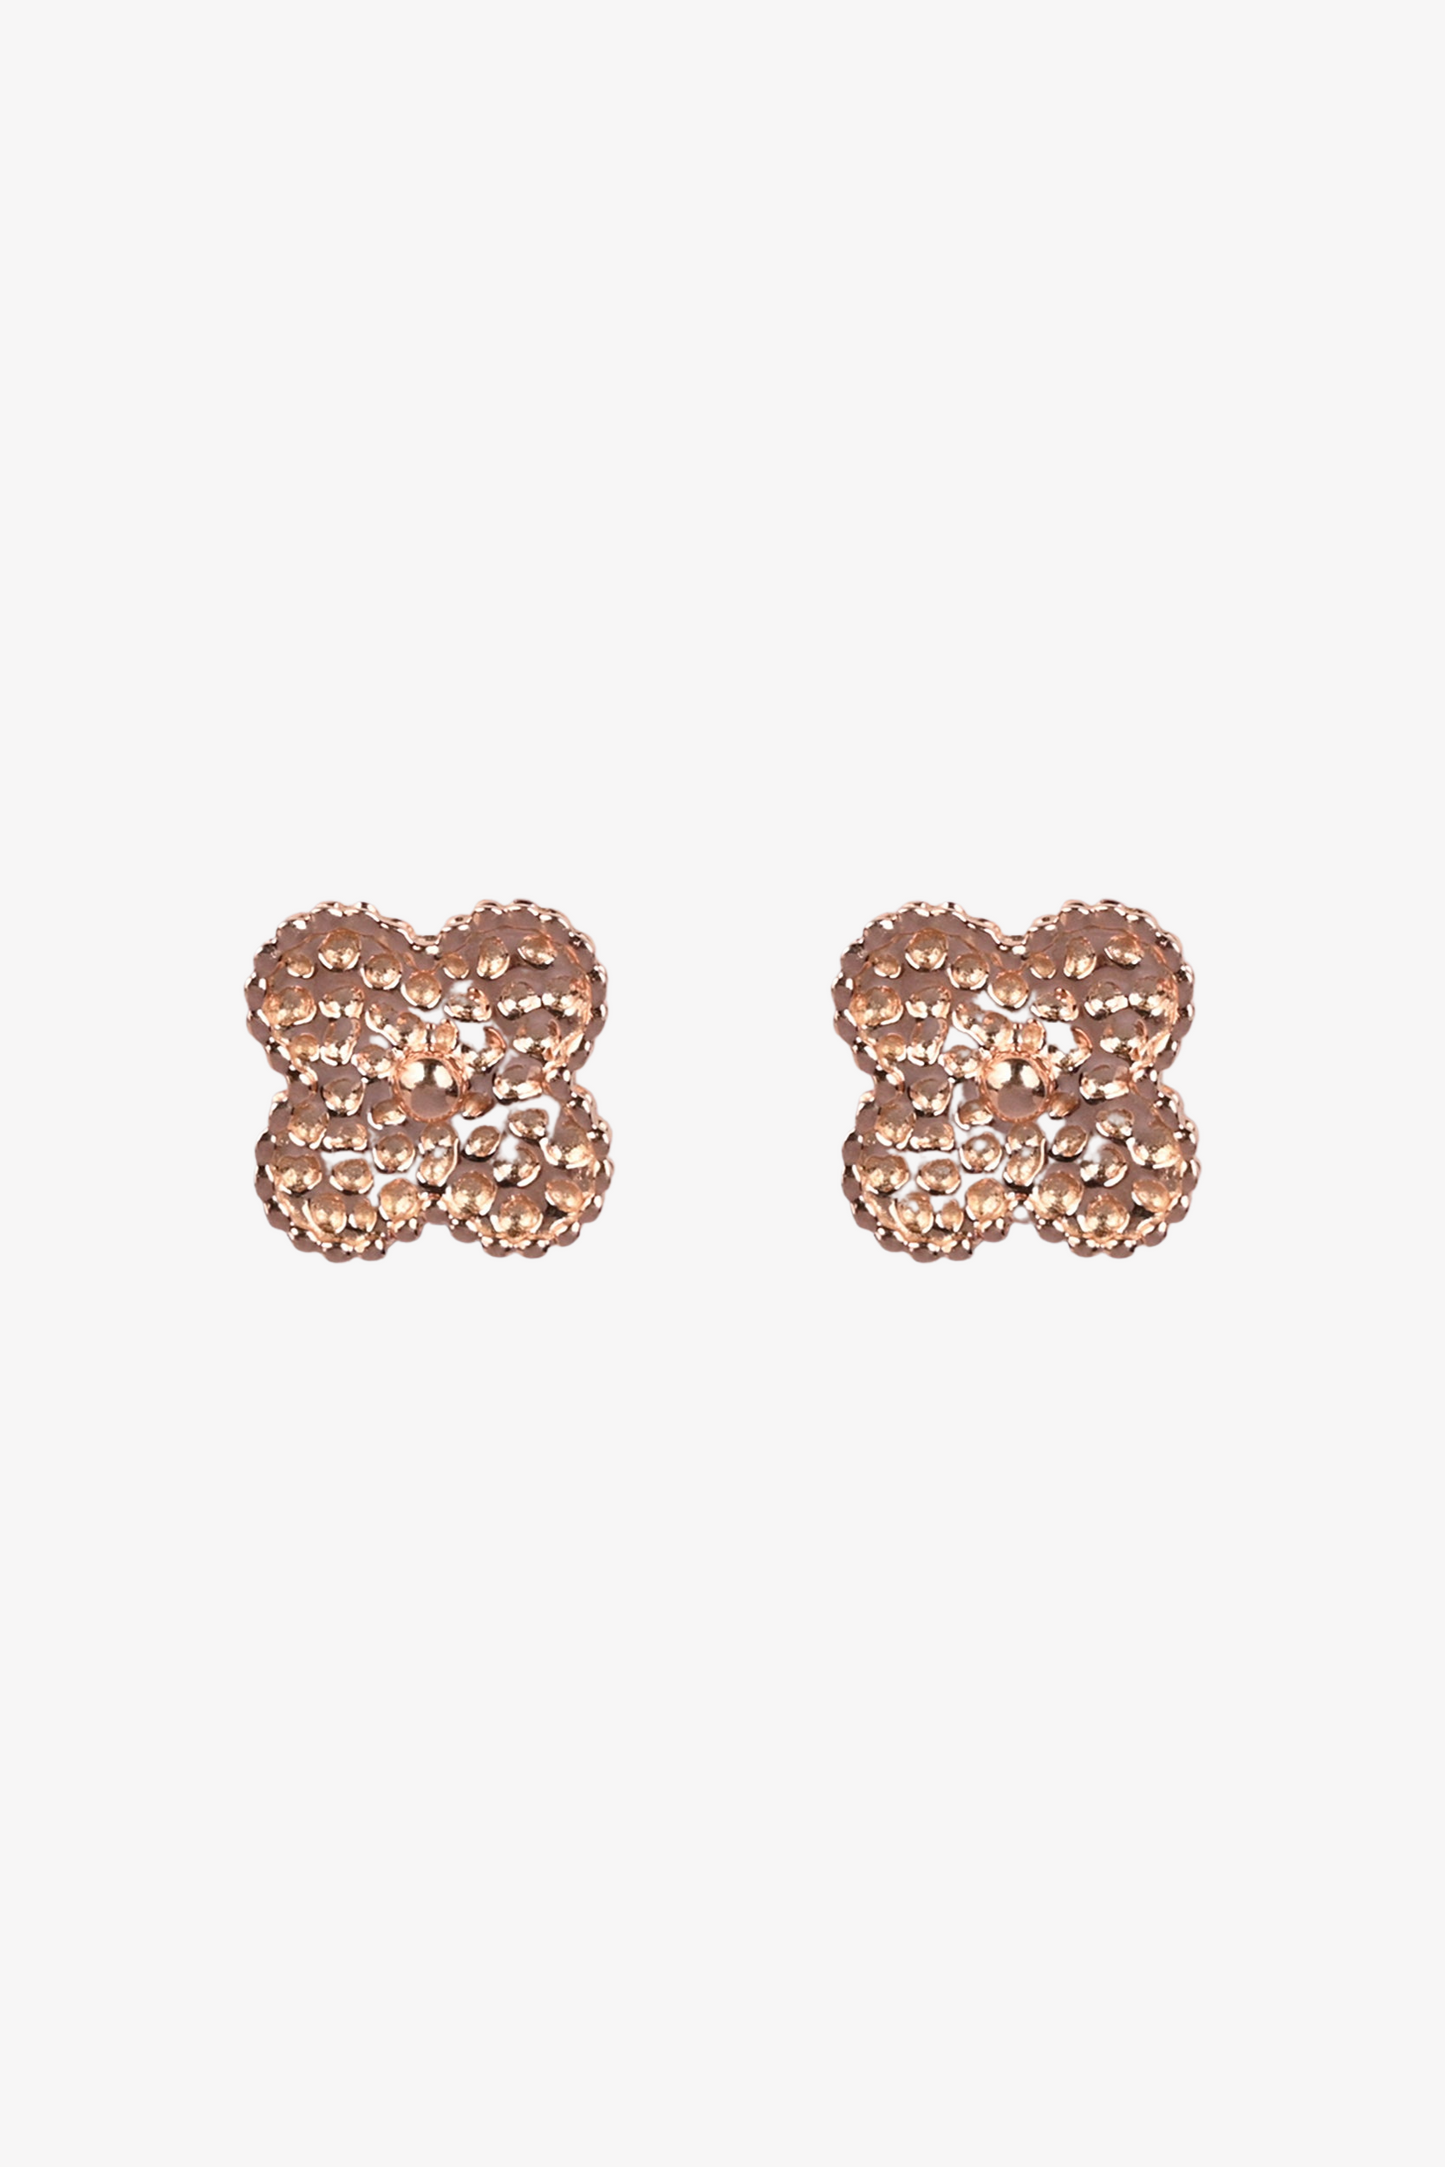 Clover Gold Stud Earrings